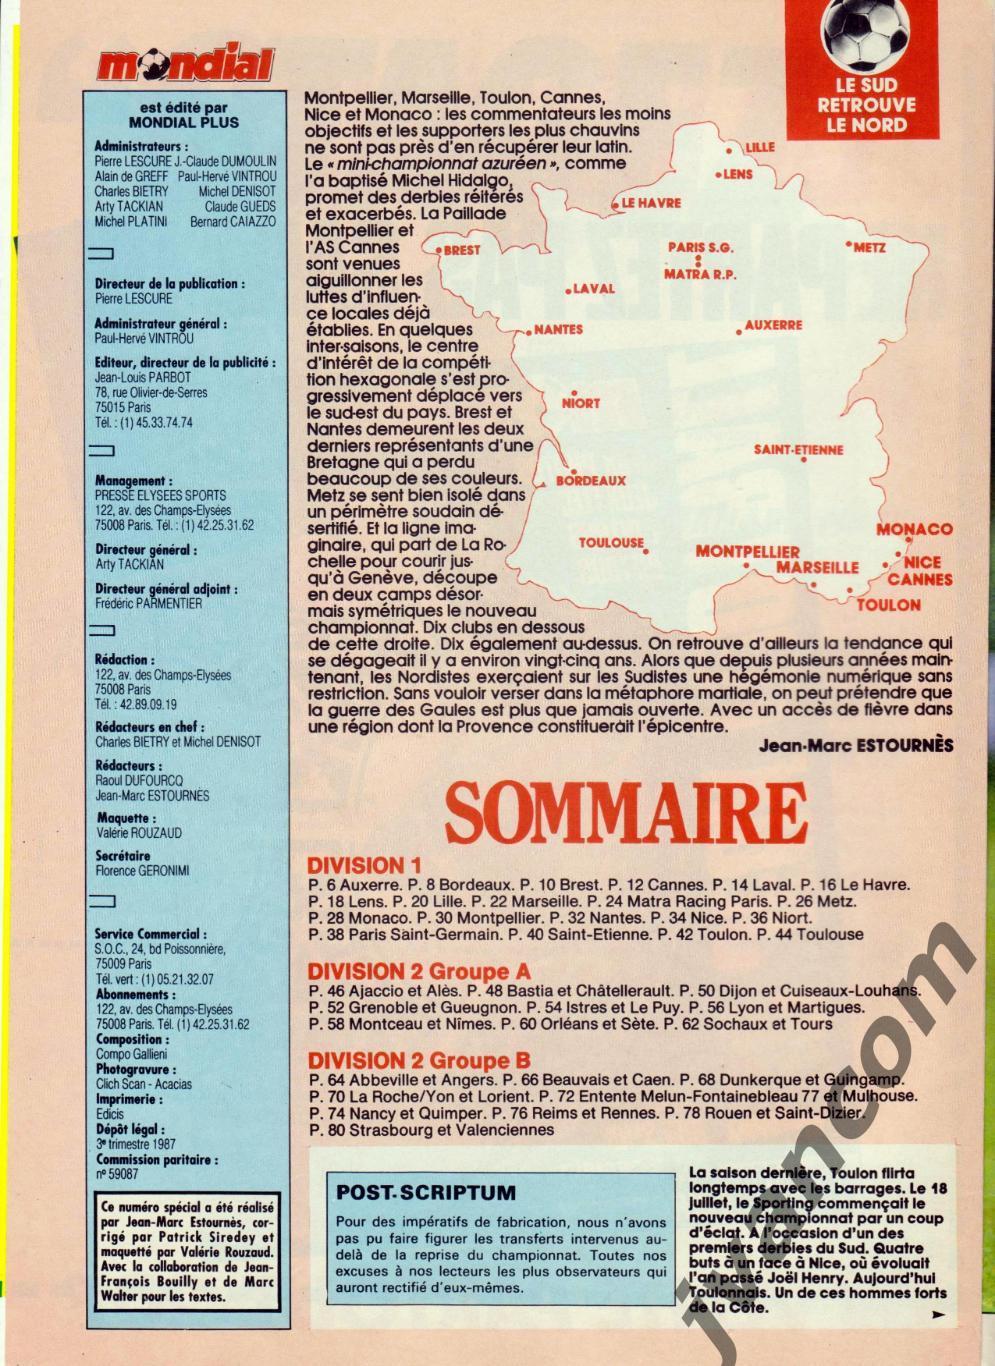 MONDIAL, спецвыпуск №5 к Чемпионату Франции по футболу. Сезон 1987-88 годов. 1